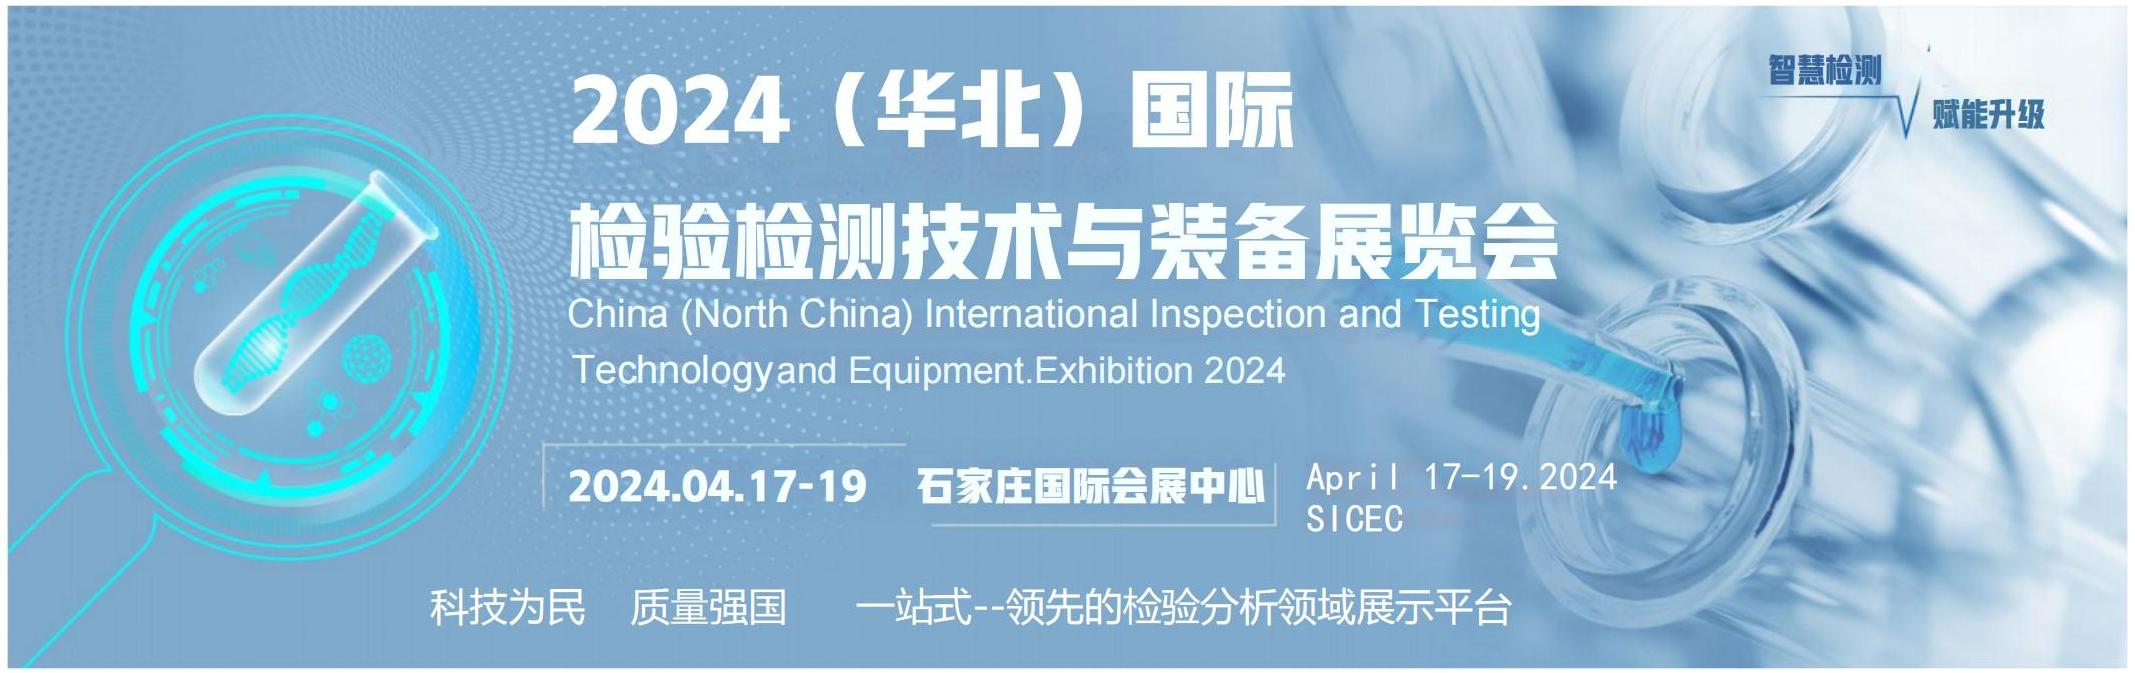 2024华北国际检验检测技术与设备展览会